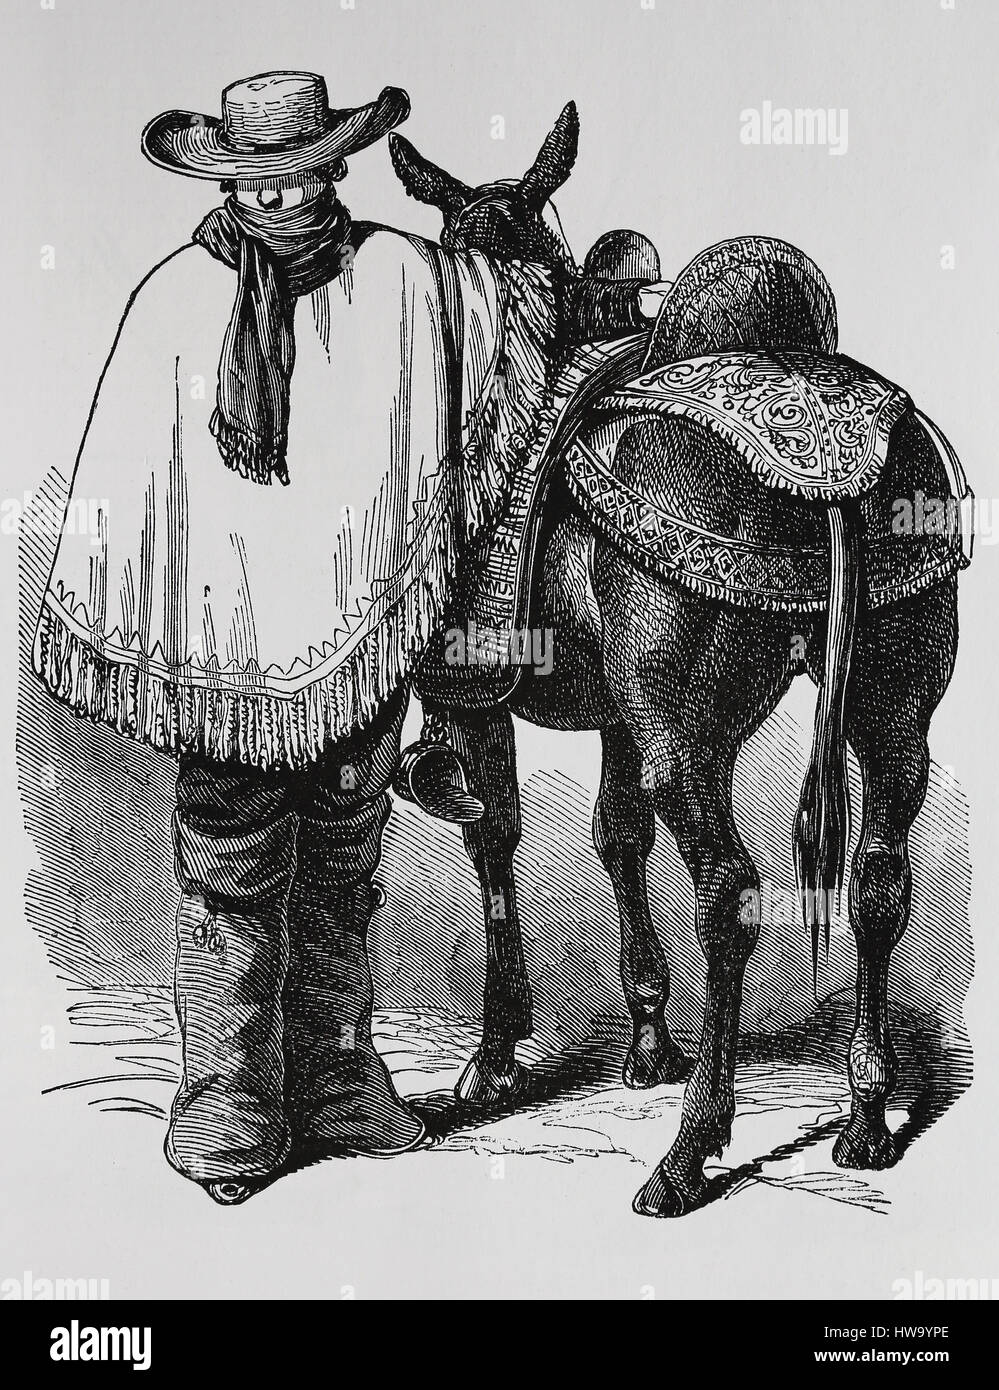 Péruvien typique traveler avec cheval. Robe traditionnelle. Vers 1845, 19e siècle. La gravure, l'illustration. Banque D'Images